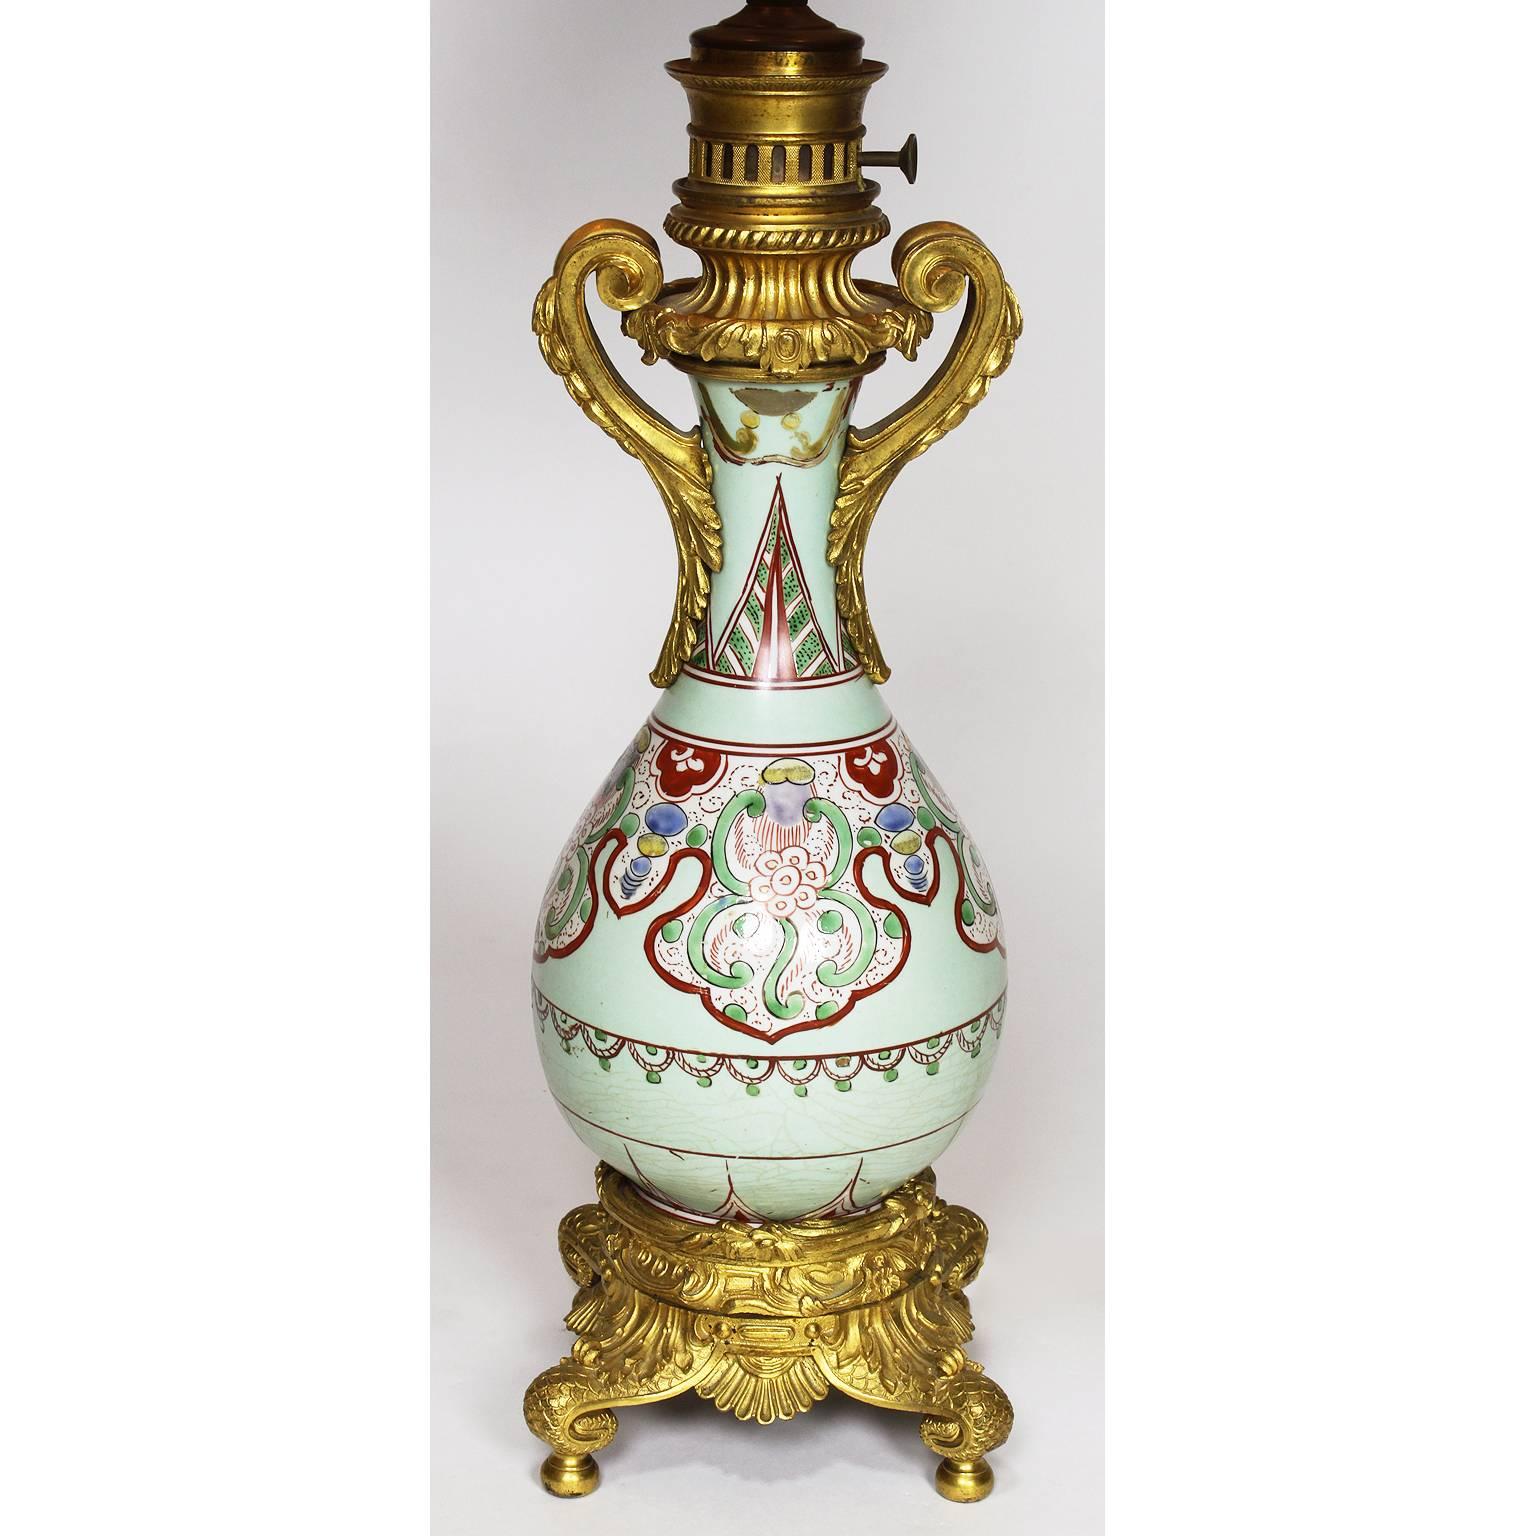 Paire de vases-bouteilles en porcelaine d'exportation chinoise du XIXe siècle, montés en bronze doré pour servir de lampes à huile. Le corps en forme de poire en porcelaine ovoïde bien potée, décoré de motifs asymétriques et floraux peints à la main